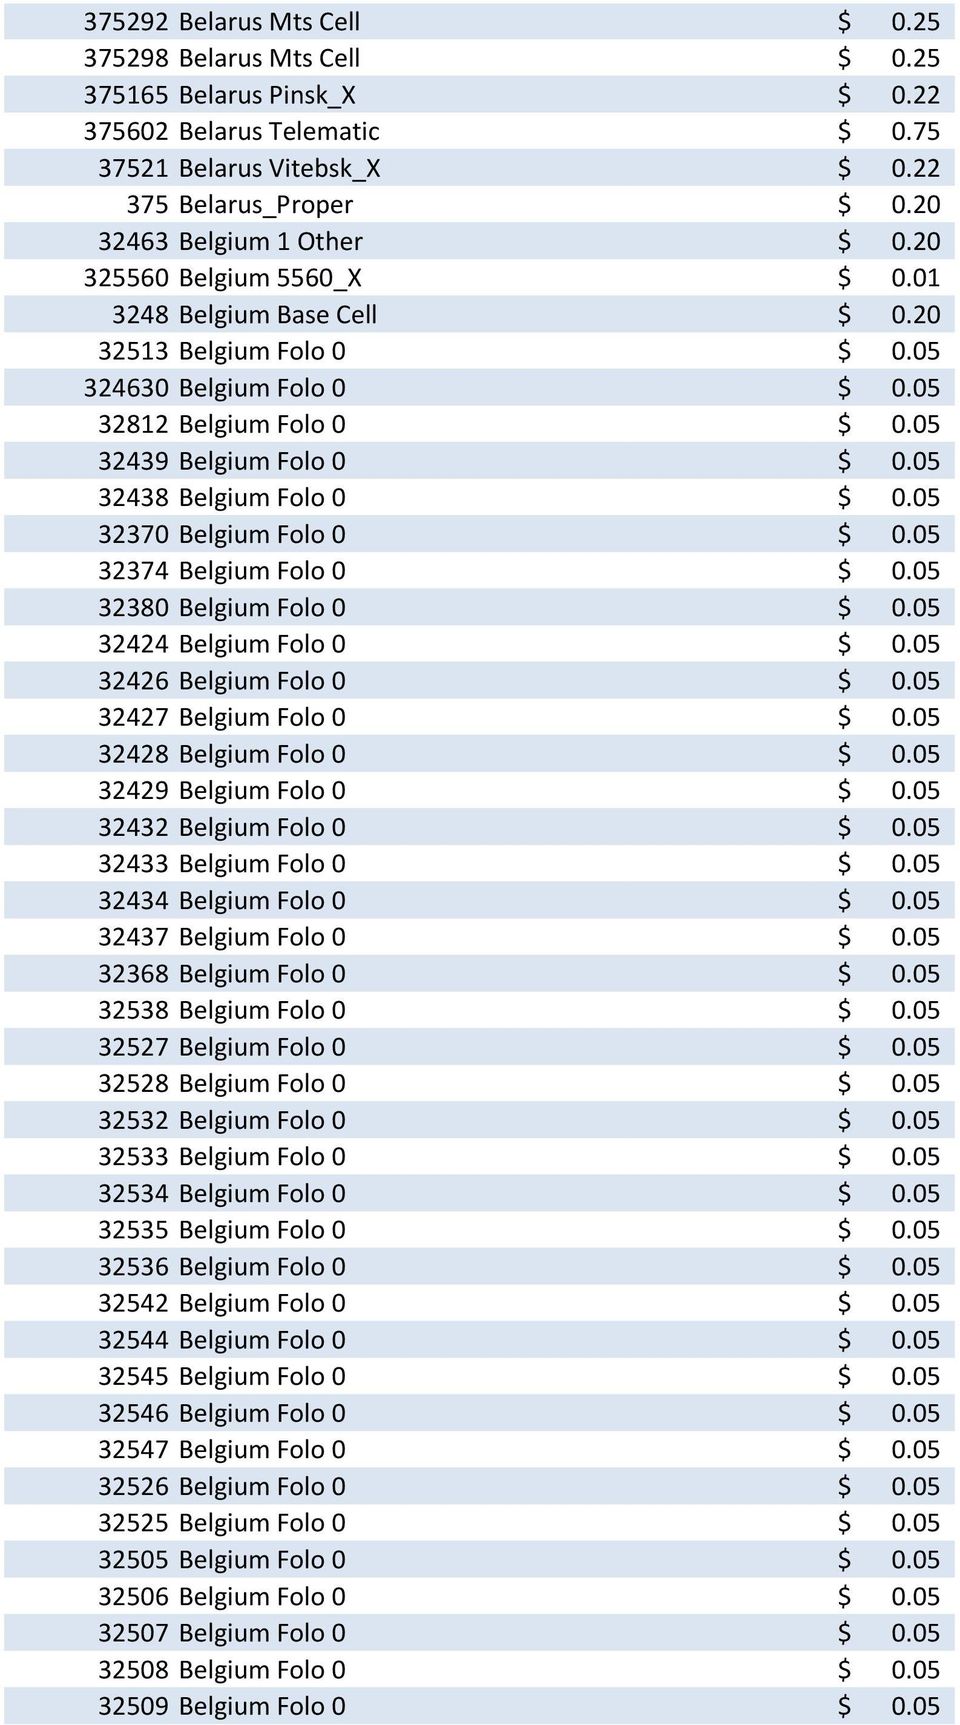 05 32439 Belgium Folo 0 $ 0.05 32438 Belgium Folo 0 $ 0.05 32370 Belgium Folo 0 $ 0.05 32374 Belgium Folo 0 $ 0.05 32380 Belgium Folo 0 $ 0.05 32424 Belgium Folo 0 $ 0.05 32426 Belgium Folo 0 $ 0.